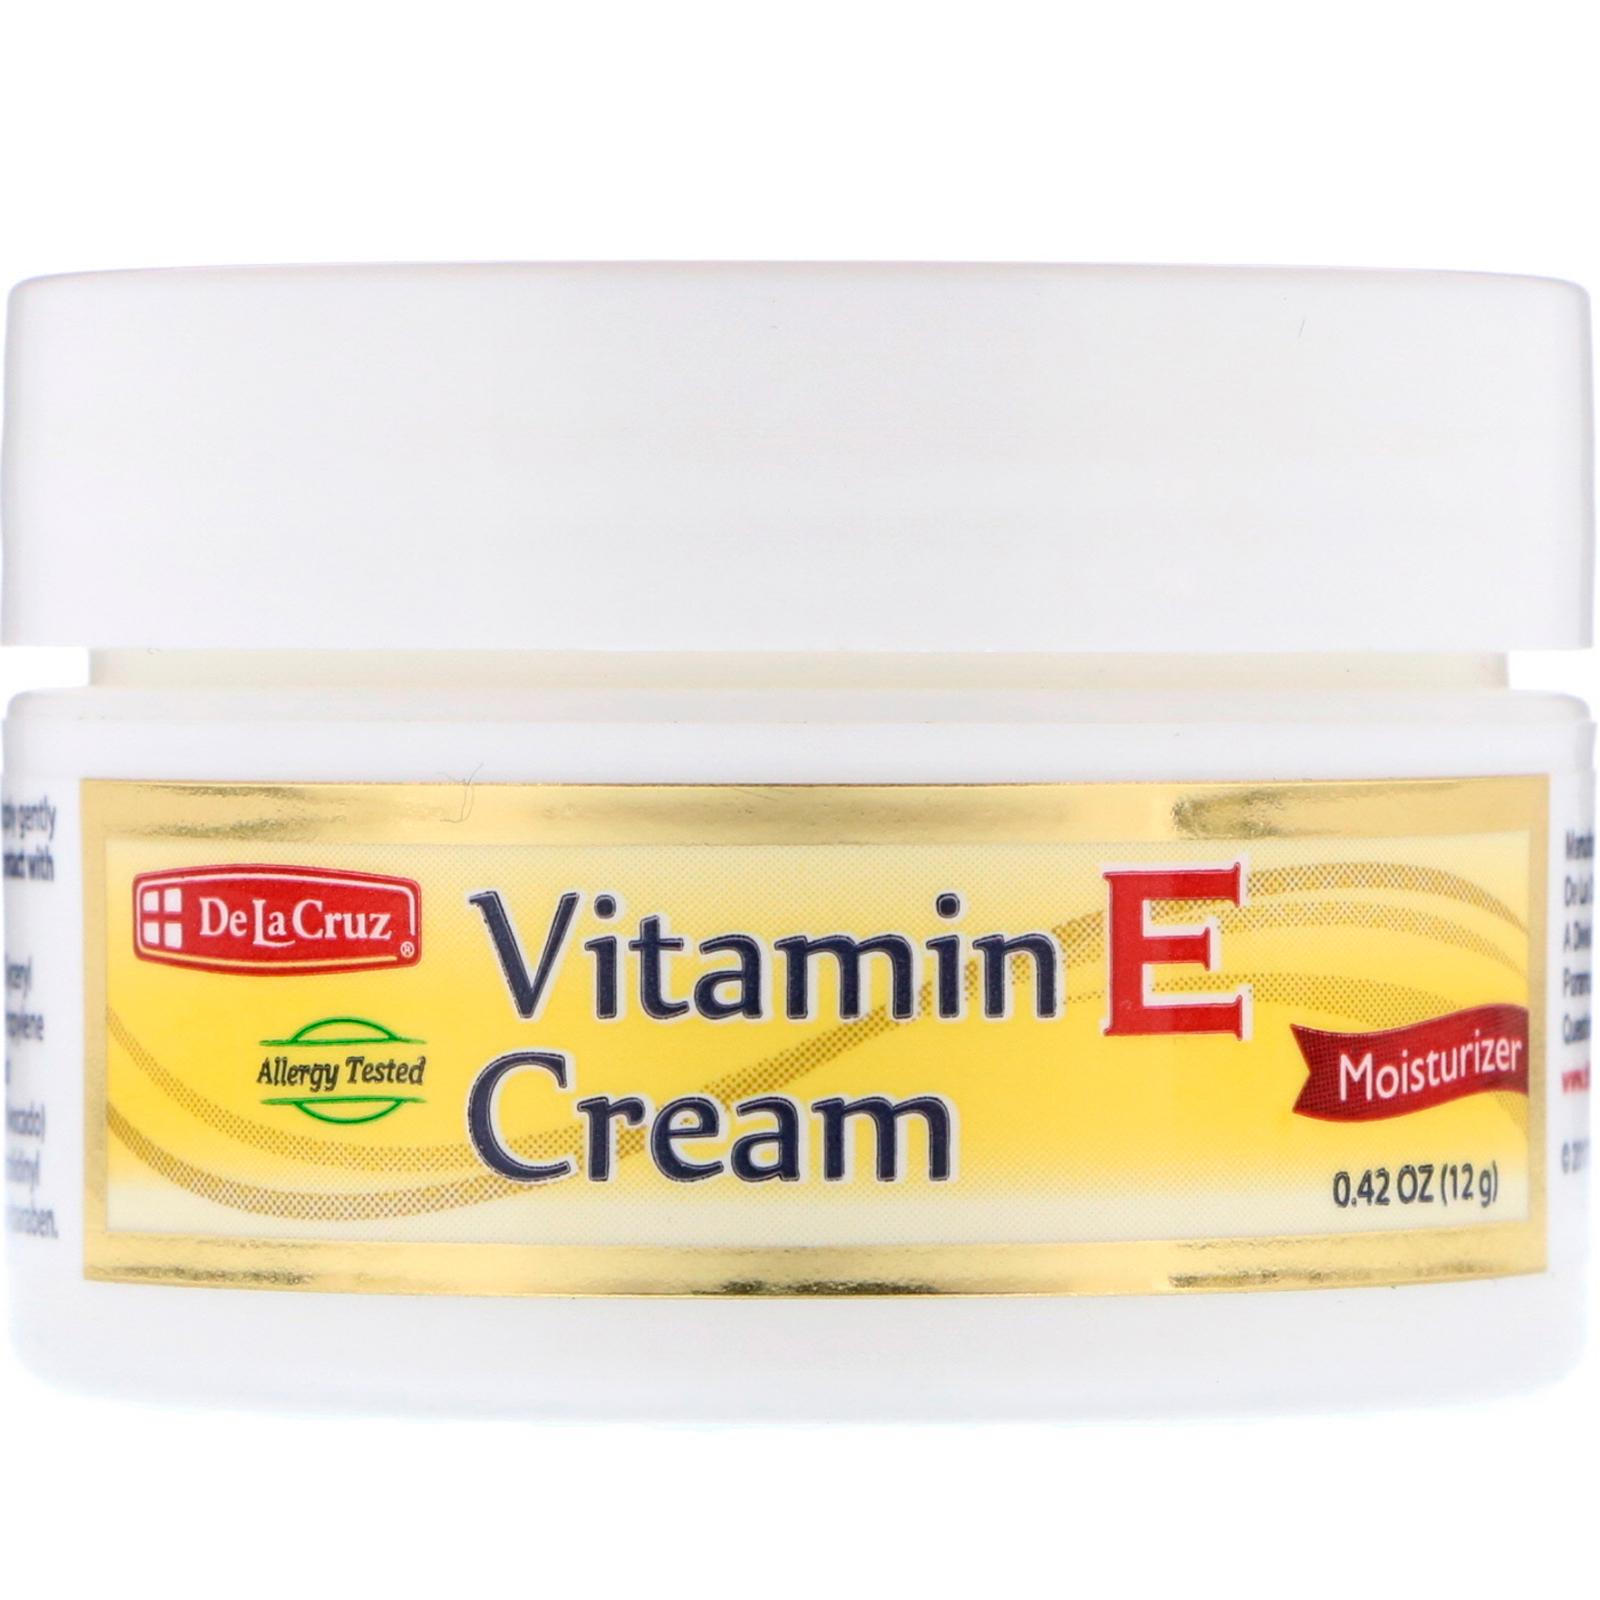 De La Cruz Vitamin E Cream 12g